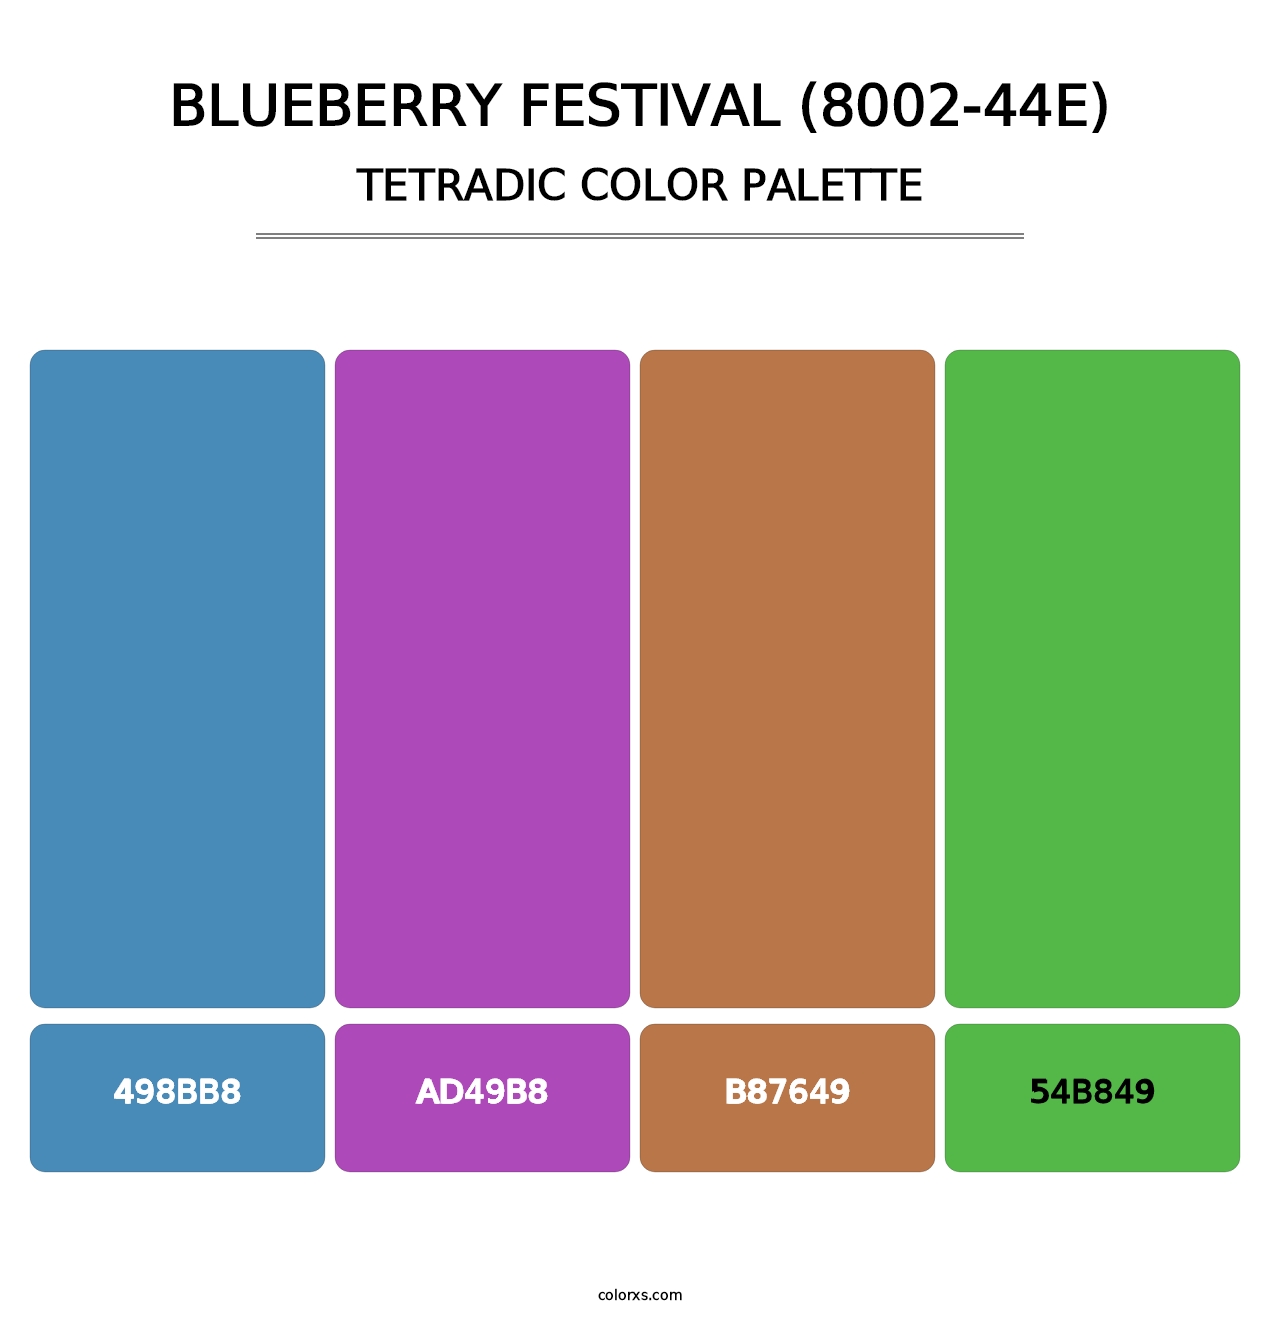 Blueberry Festival (8002-44E) - Tetradic Color Palette